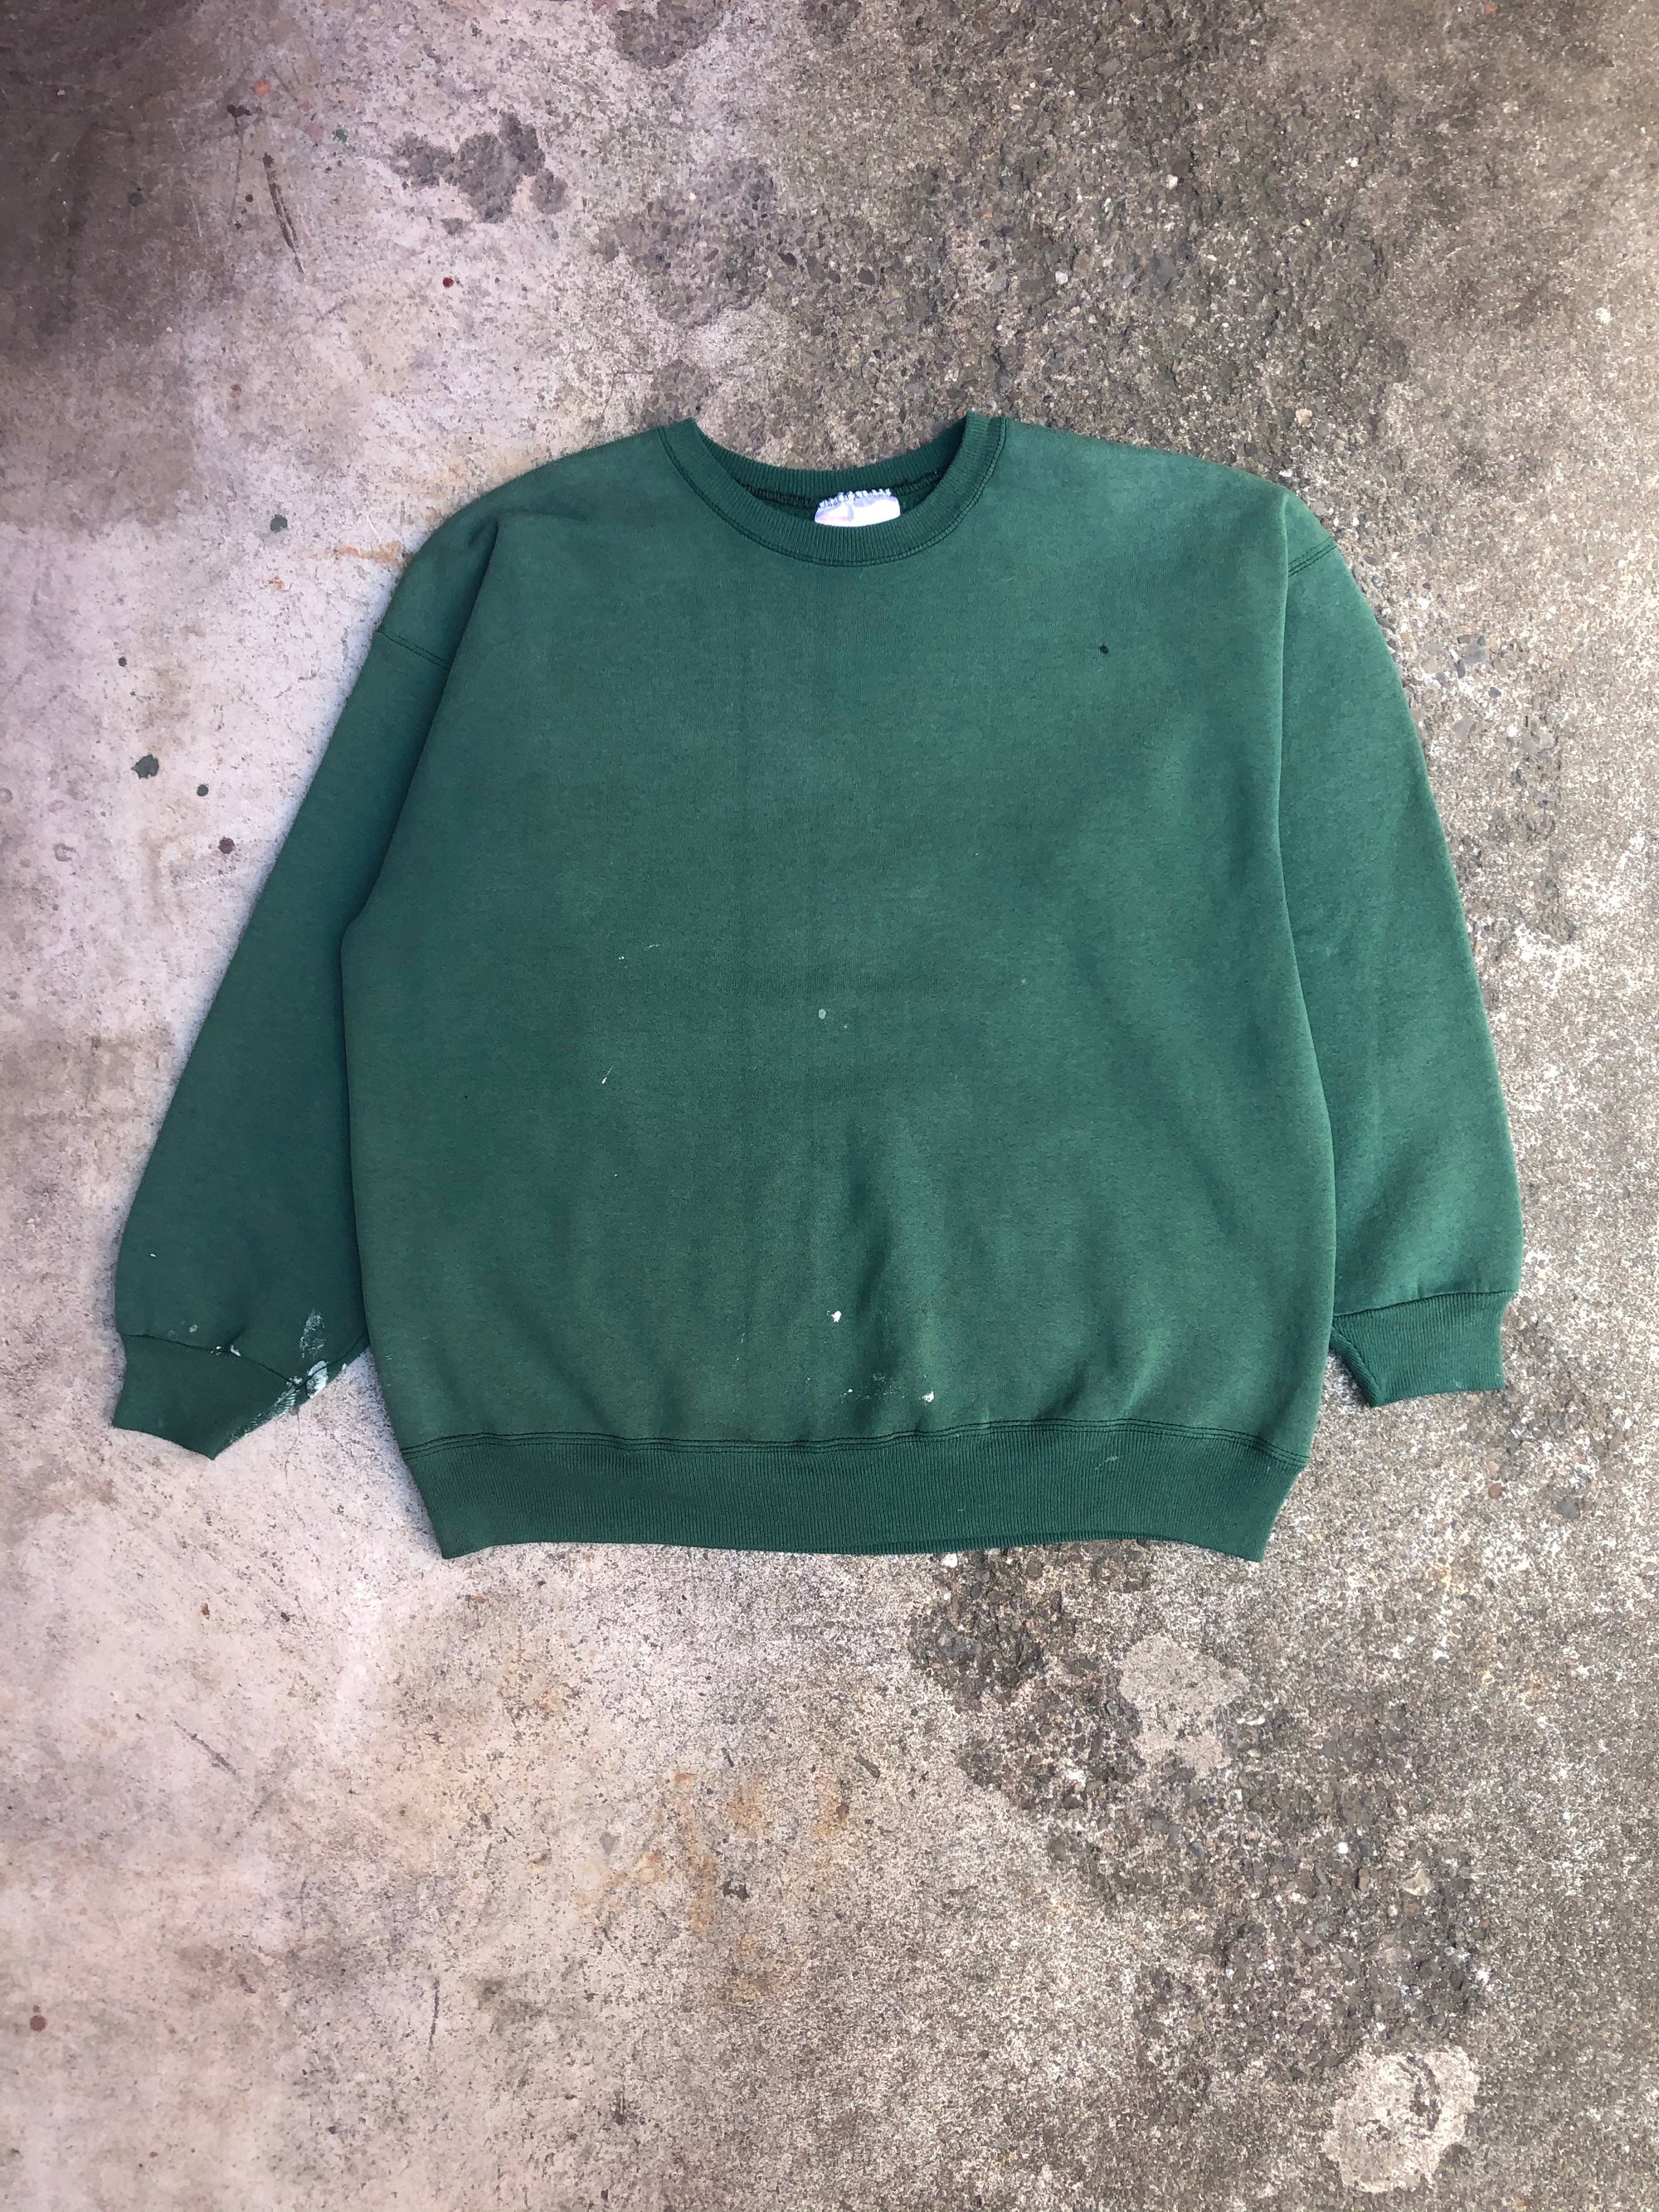 1990s Faded Green Blank Painter Sweatshirt